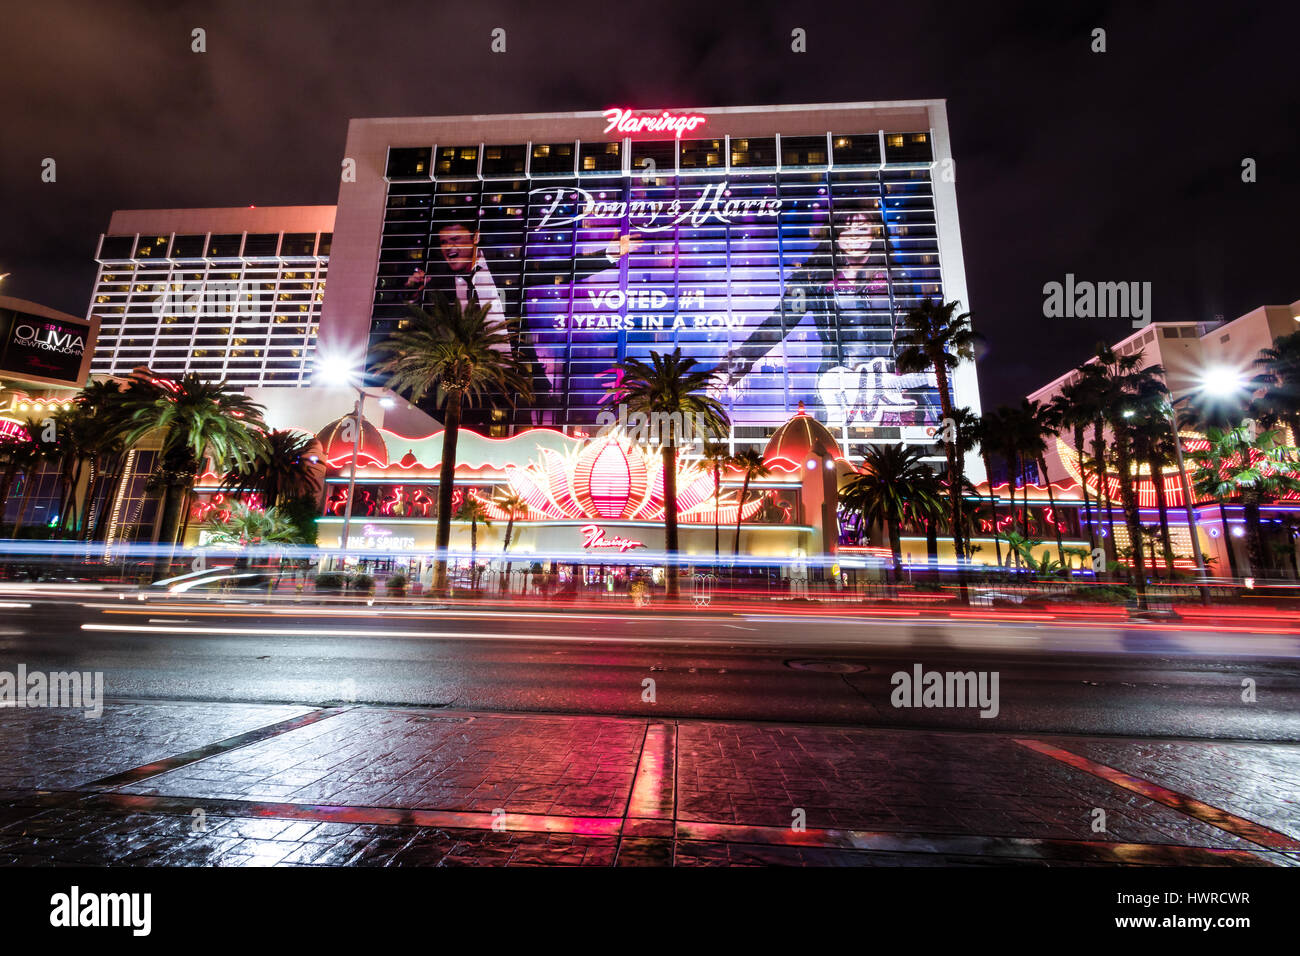 Las Vegas Strip and Flamingo Hotel Casino at night - Las Vegas, Nevada, USA Stock Photo